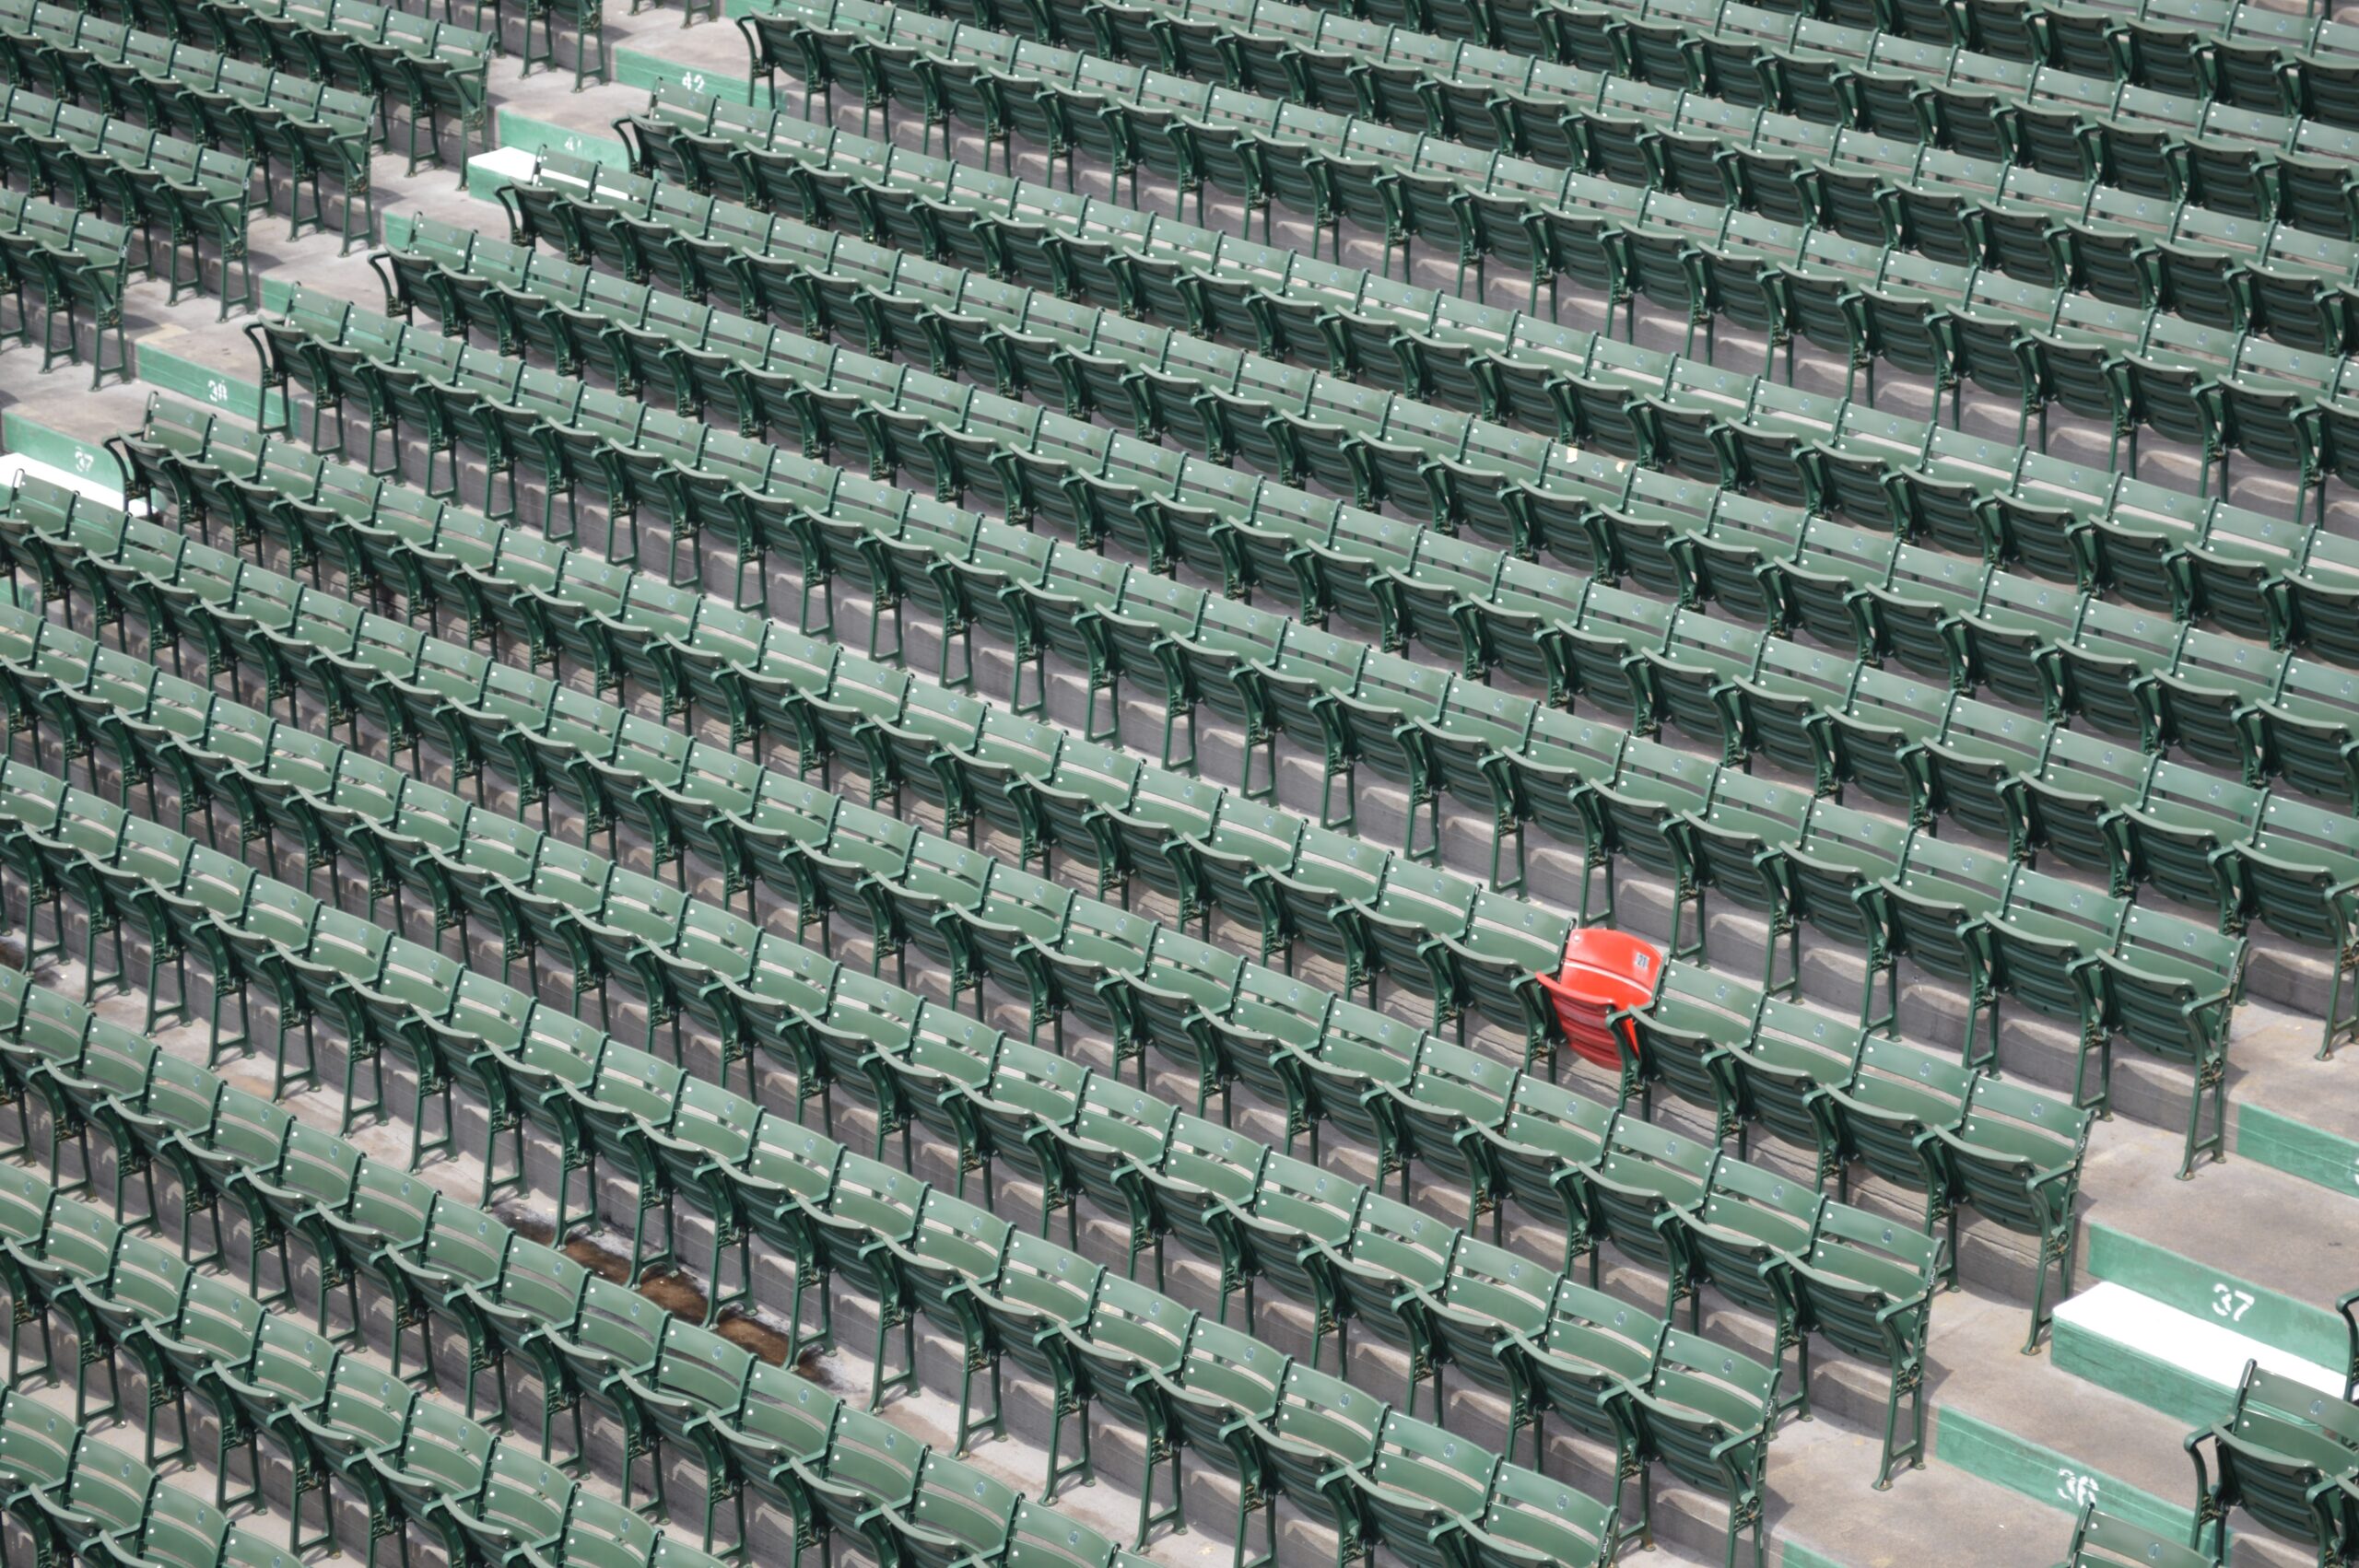 Empty seats.